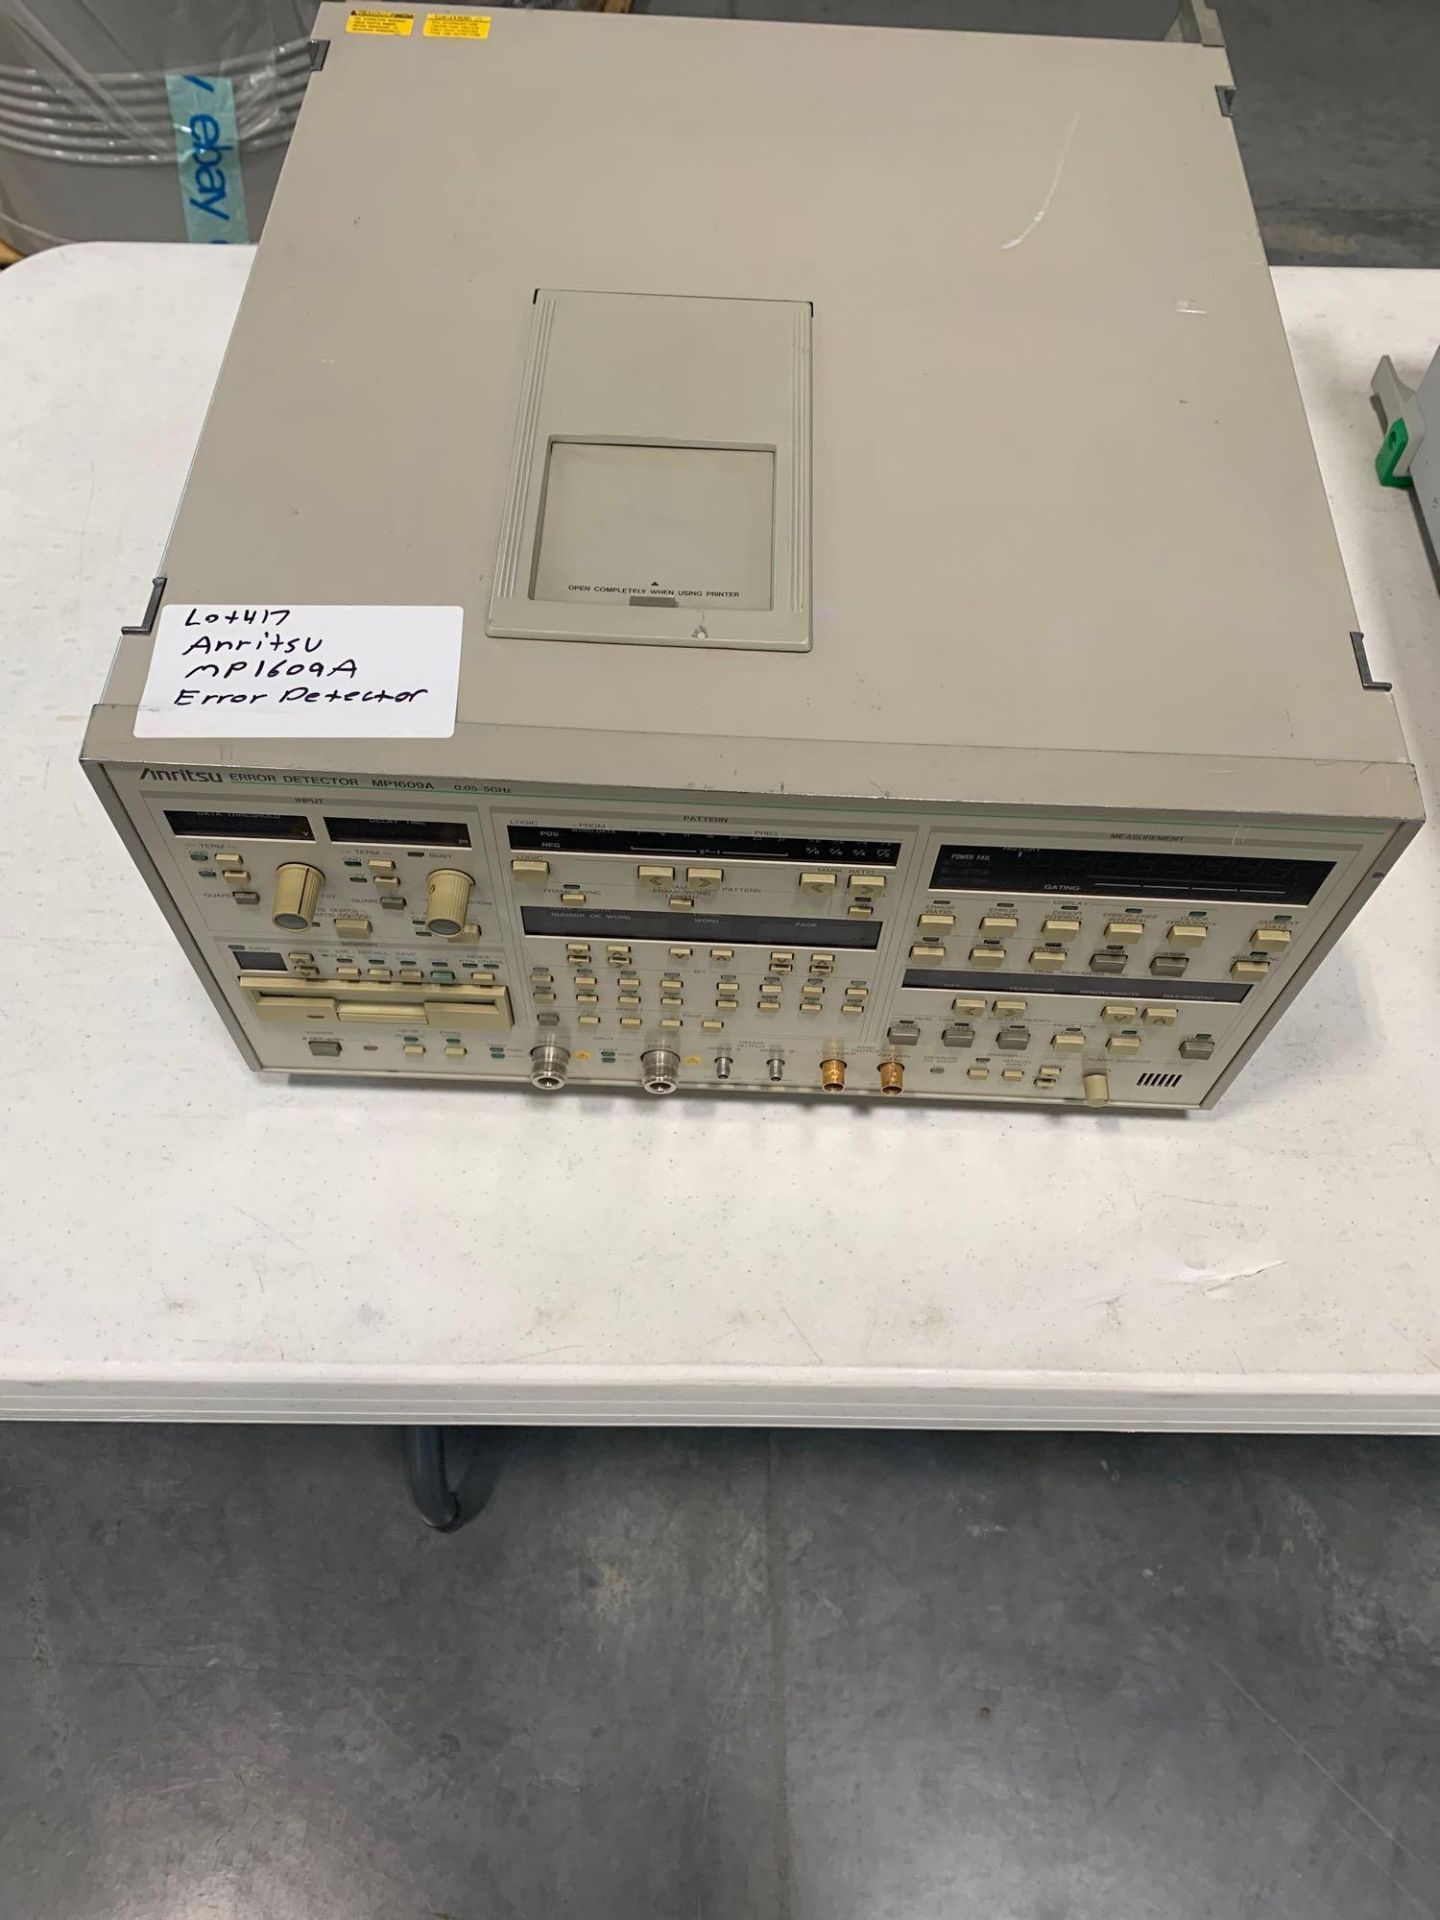 ANRITSU MP1609A Error Detector